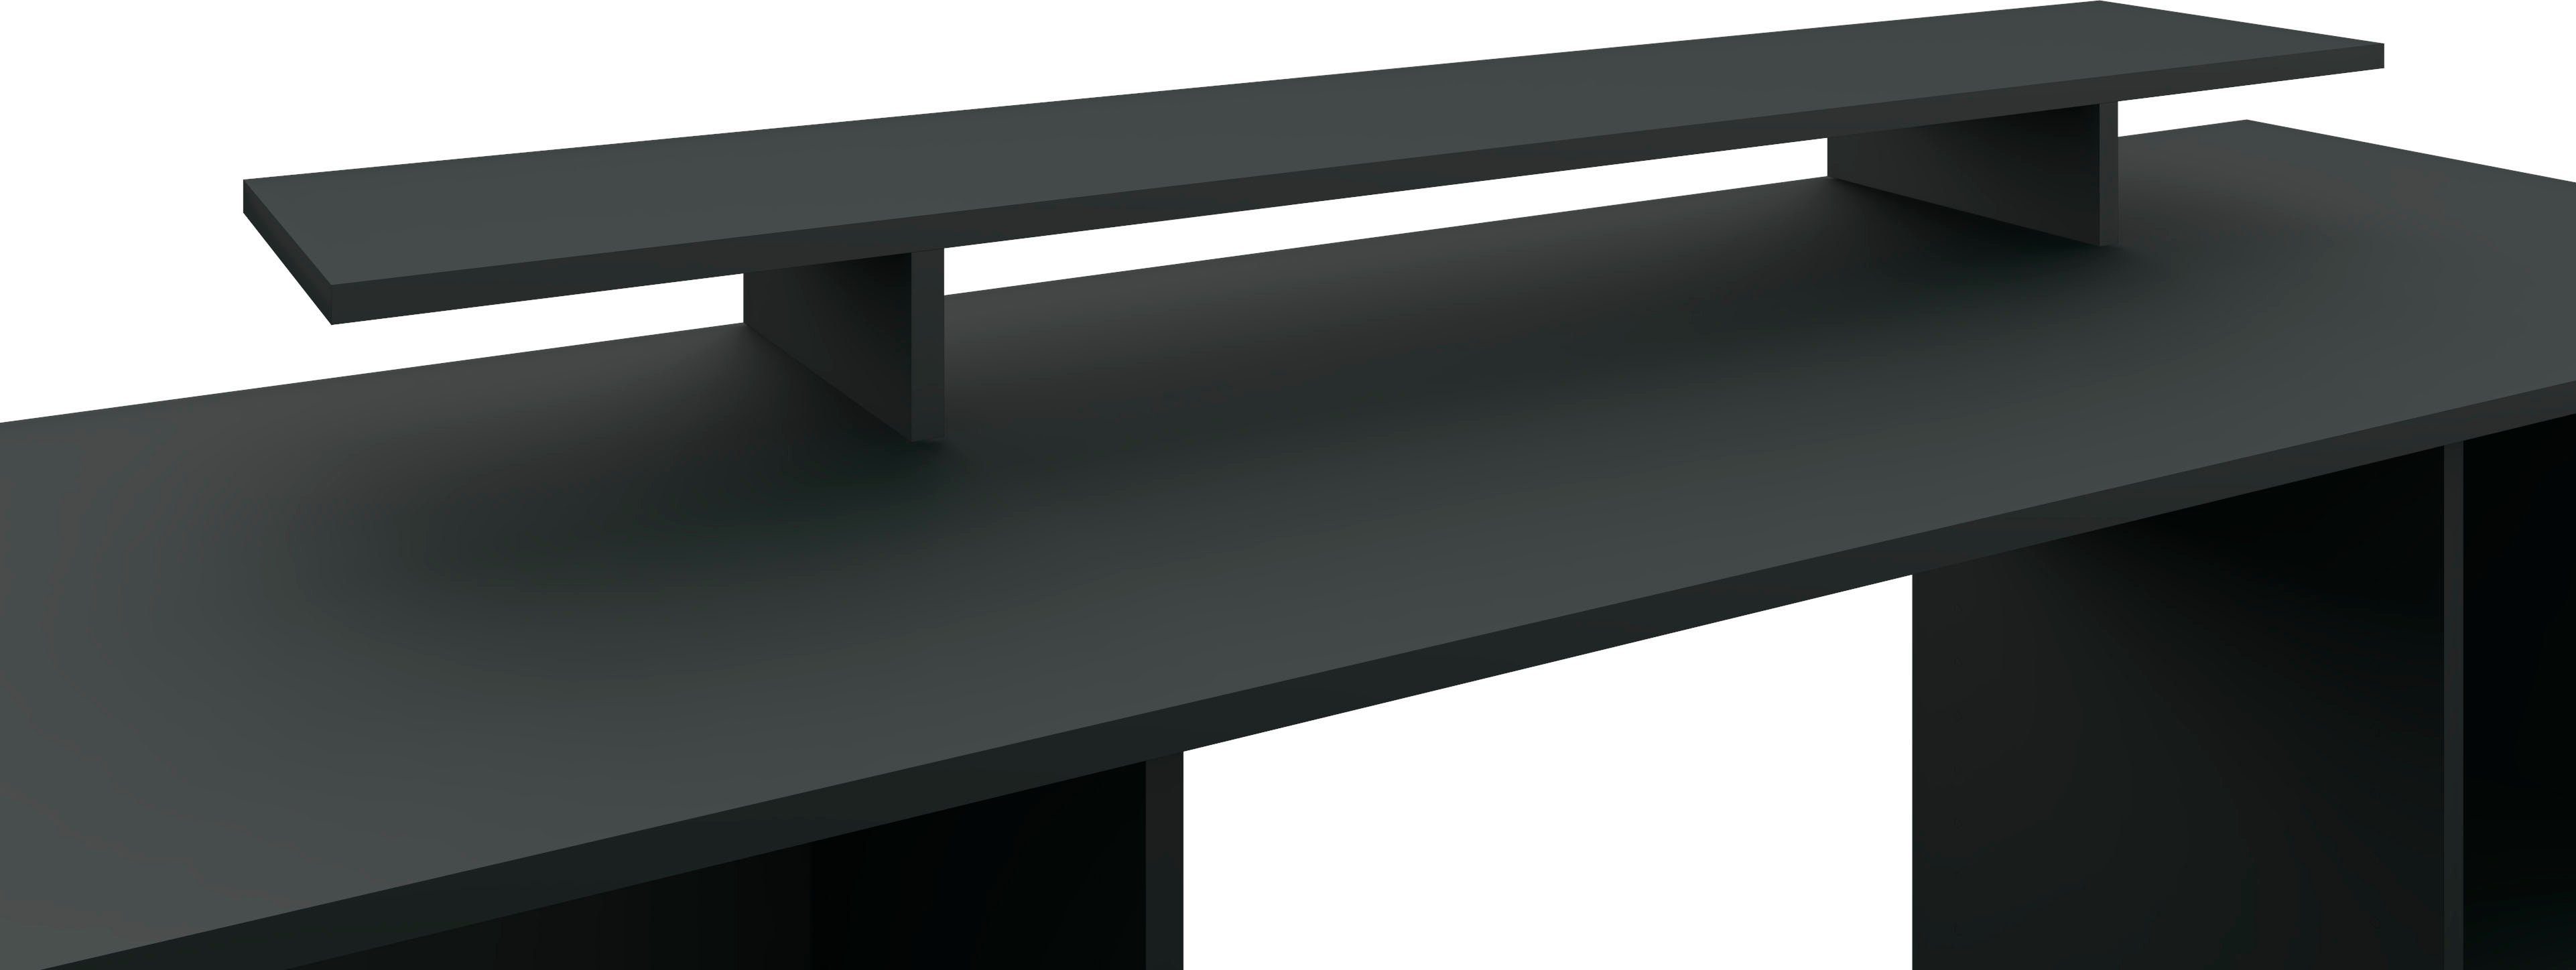 in Monitorständer, Germany Schreibtischaufsatz Design, borchardt Made Kai, Bildschirmerhöhung schwarz-matt Möbel modernen im